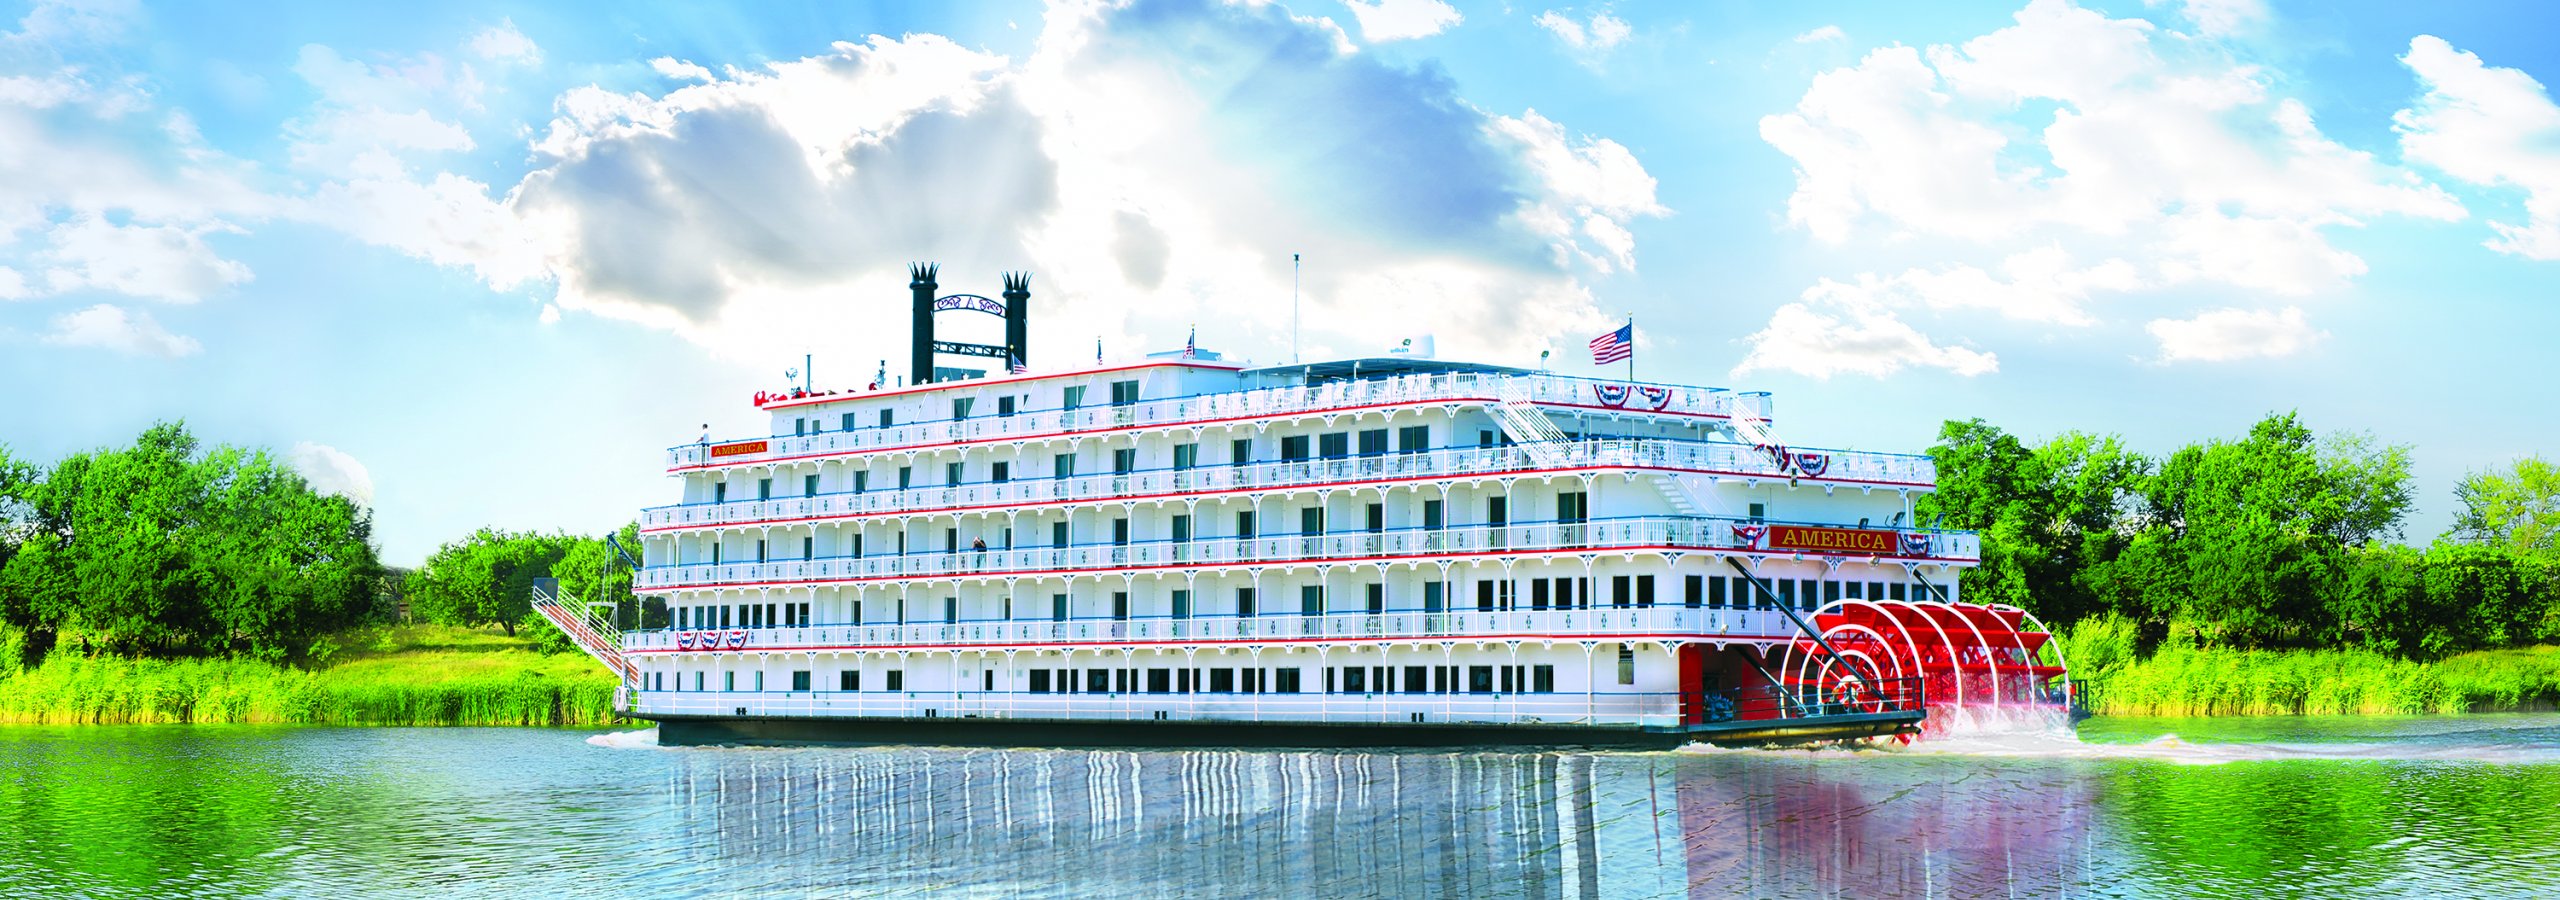 mississippi river cruise for seniors